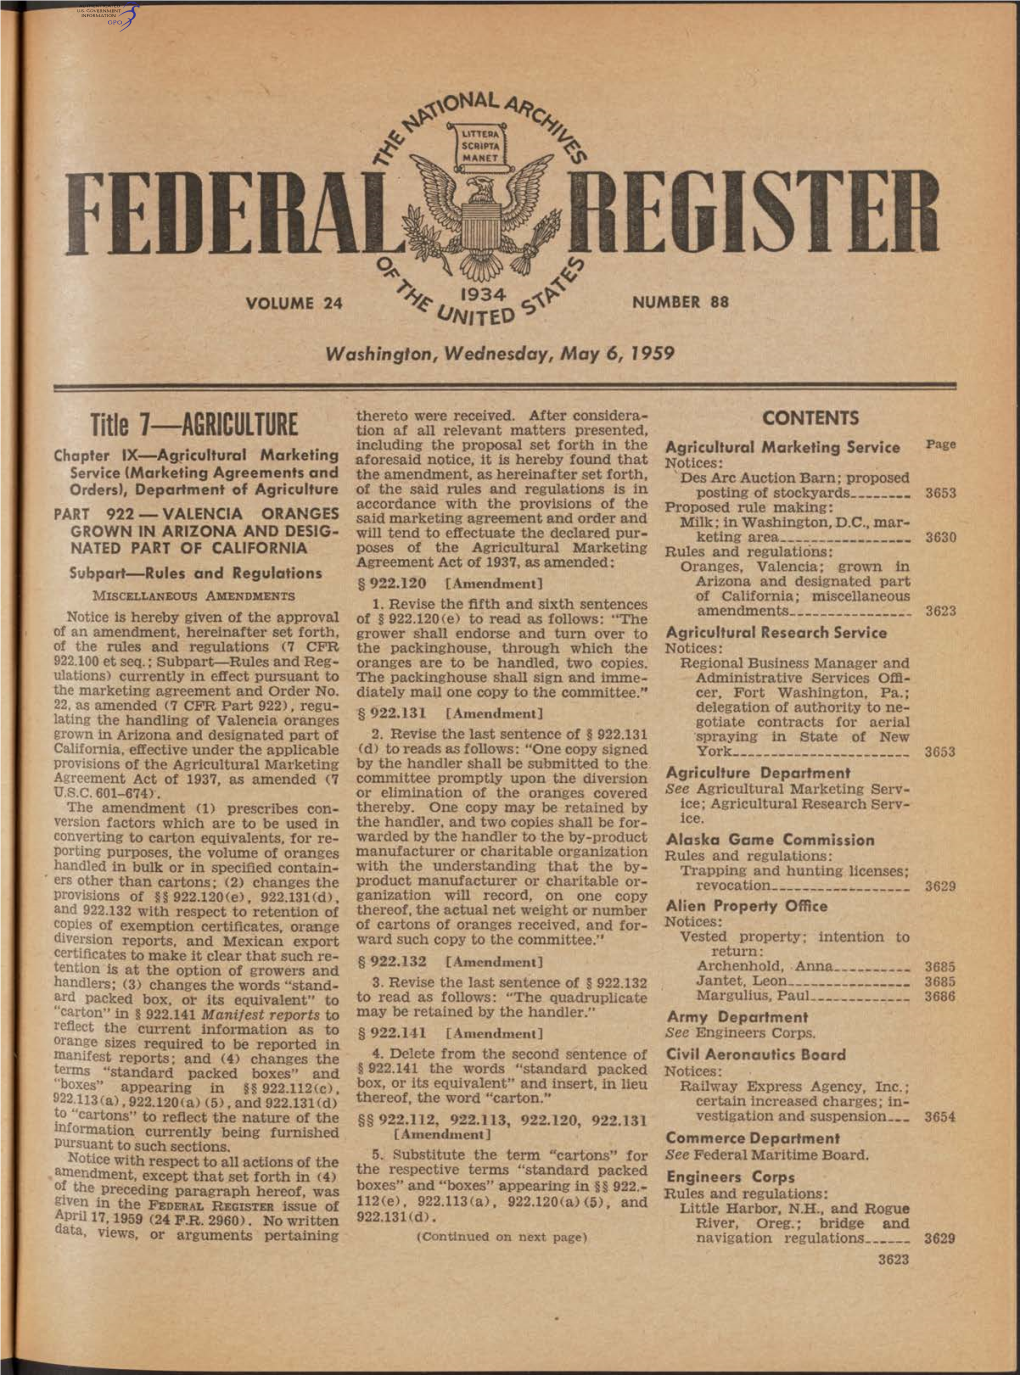 EGISTER \ 1 9 3 4 ^ VOLUME 24 NUMBER 88 * ^Af/TED ^ Washington, Wednesday, May 6, 1959